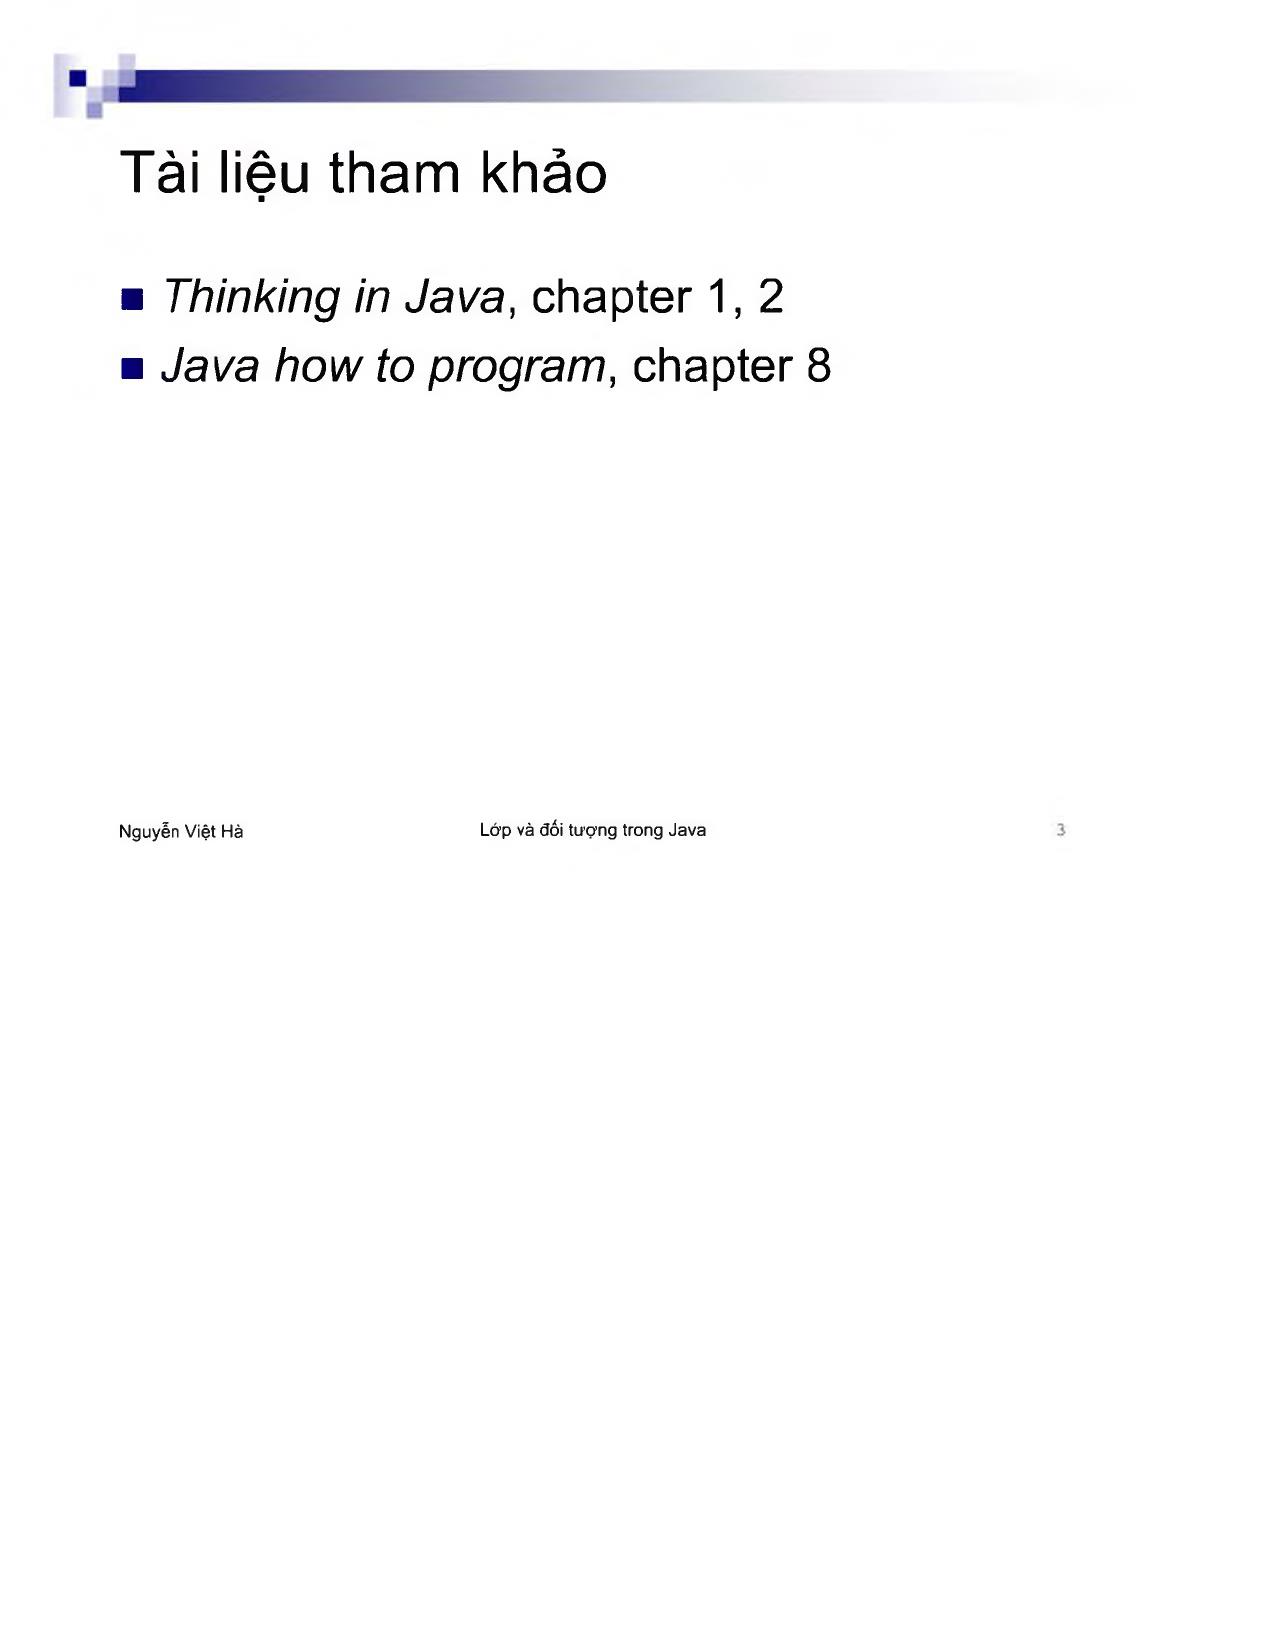 Lớp và đối tượng trong Java trang 3